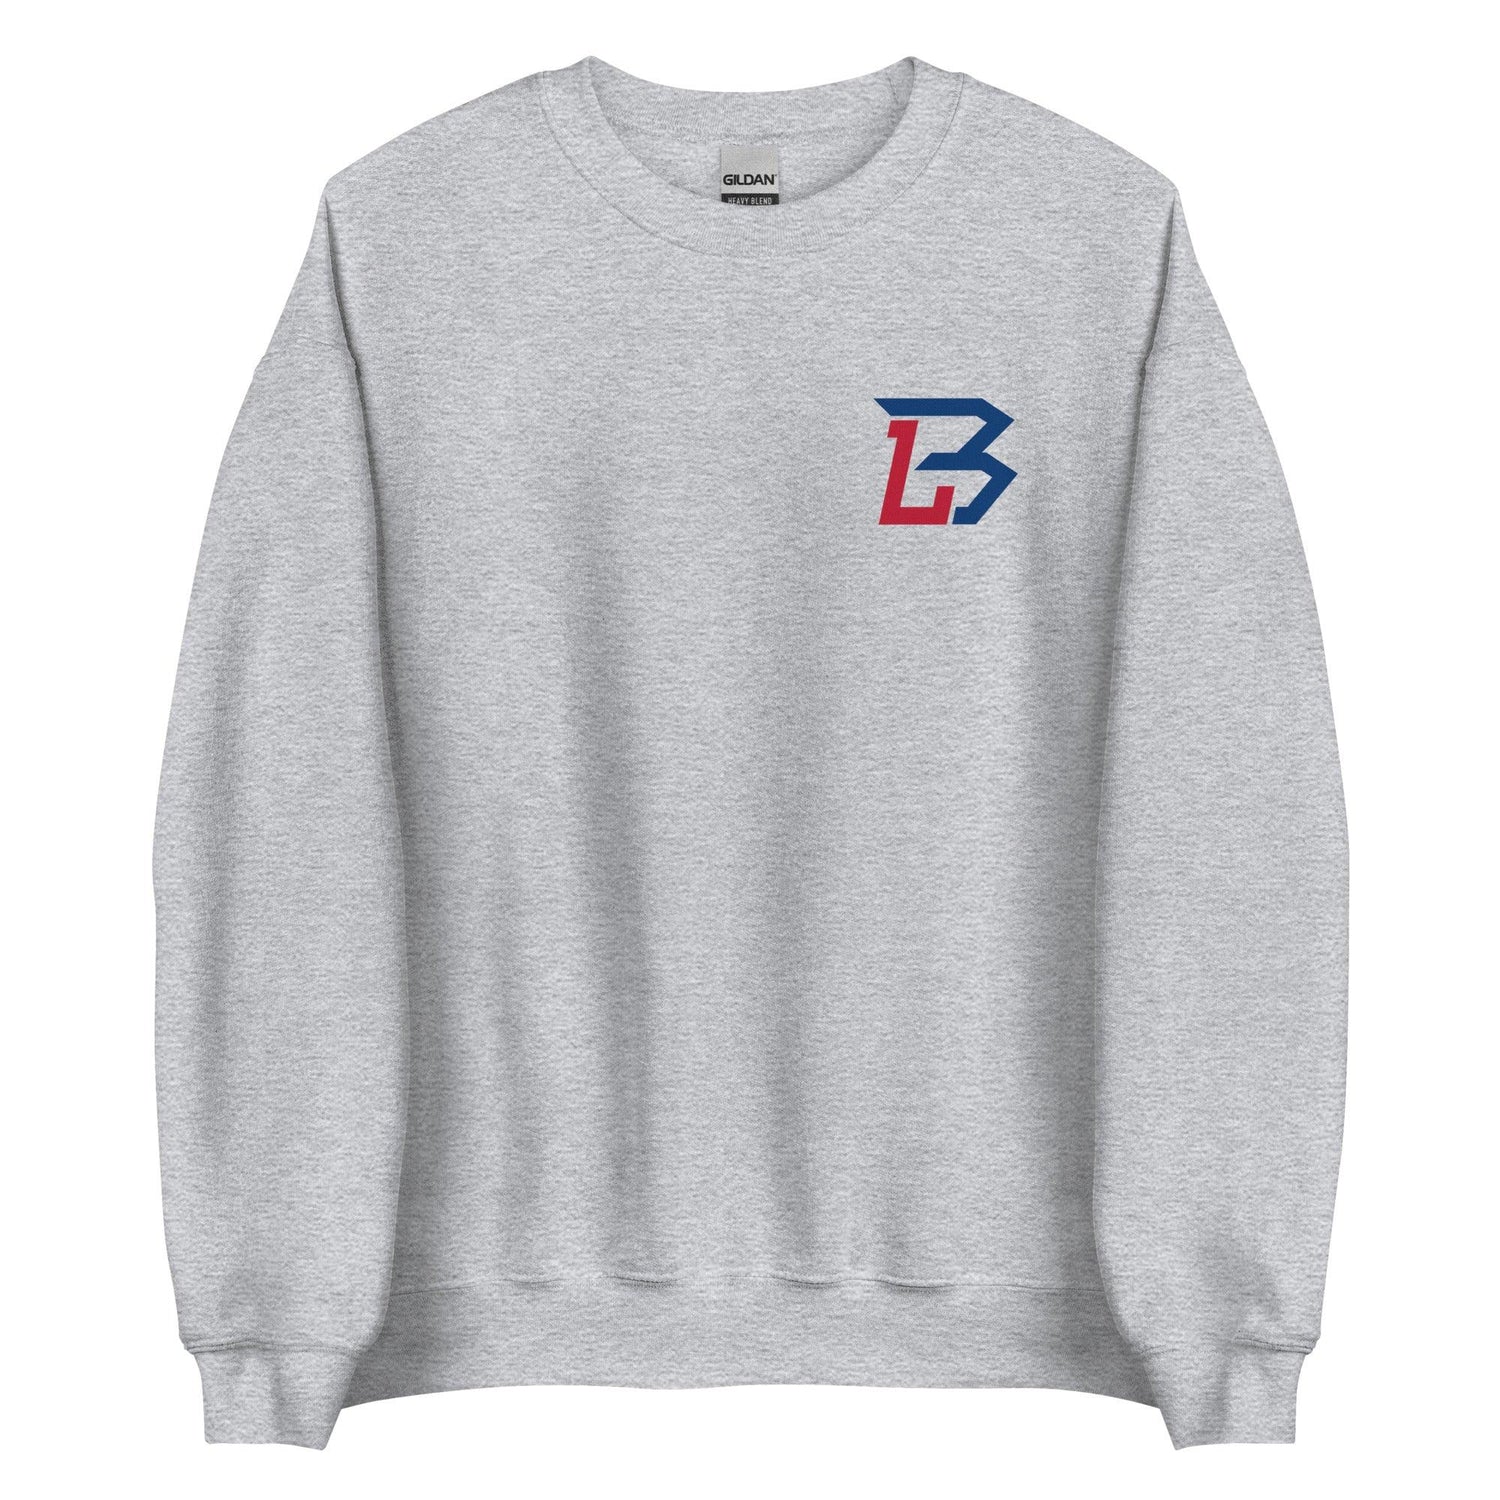 Brendon Little "Essential" Sweatshirt - Fan Arch